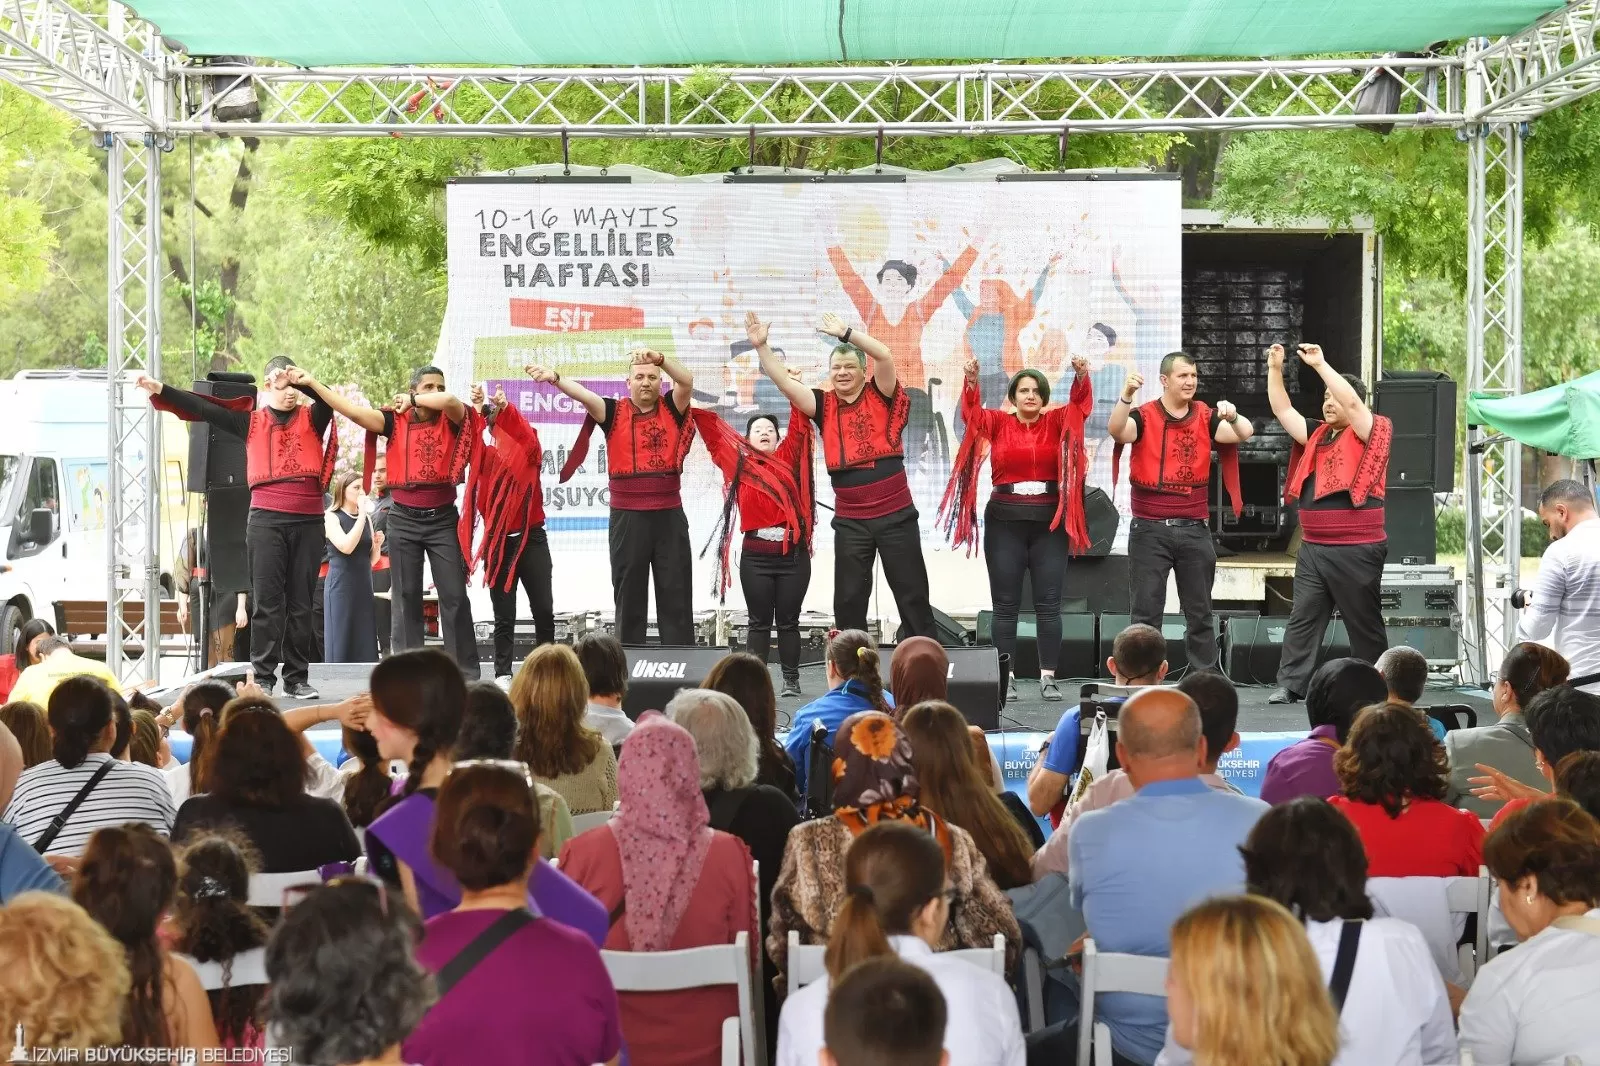 İzmir Büyükşehir Belediyesi, 10-16 Mayıs Engelliler Haftası kapsamında "Eşit, Erişilebilir, Engelsiz İzmir için Buluşuyoruz" sloganıyla 24 Mayıs'a kadar sürecek birçok etkinliğe ev sahipliği yapıyor